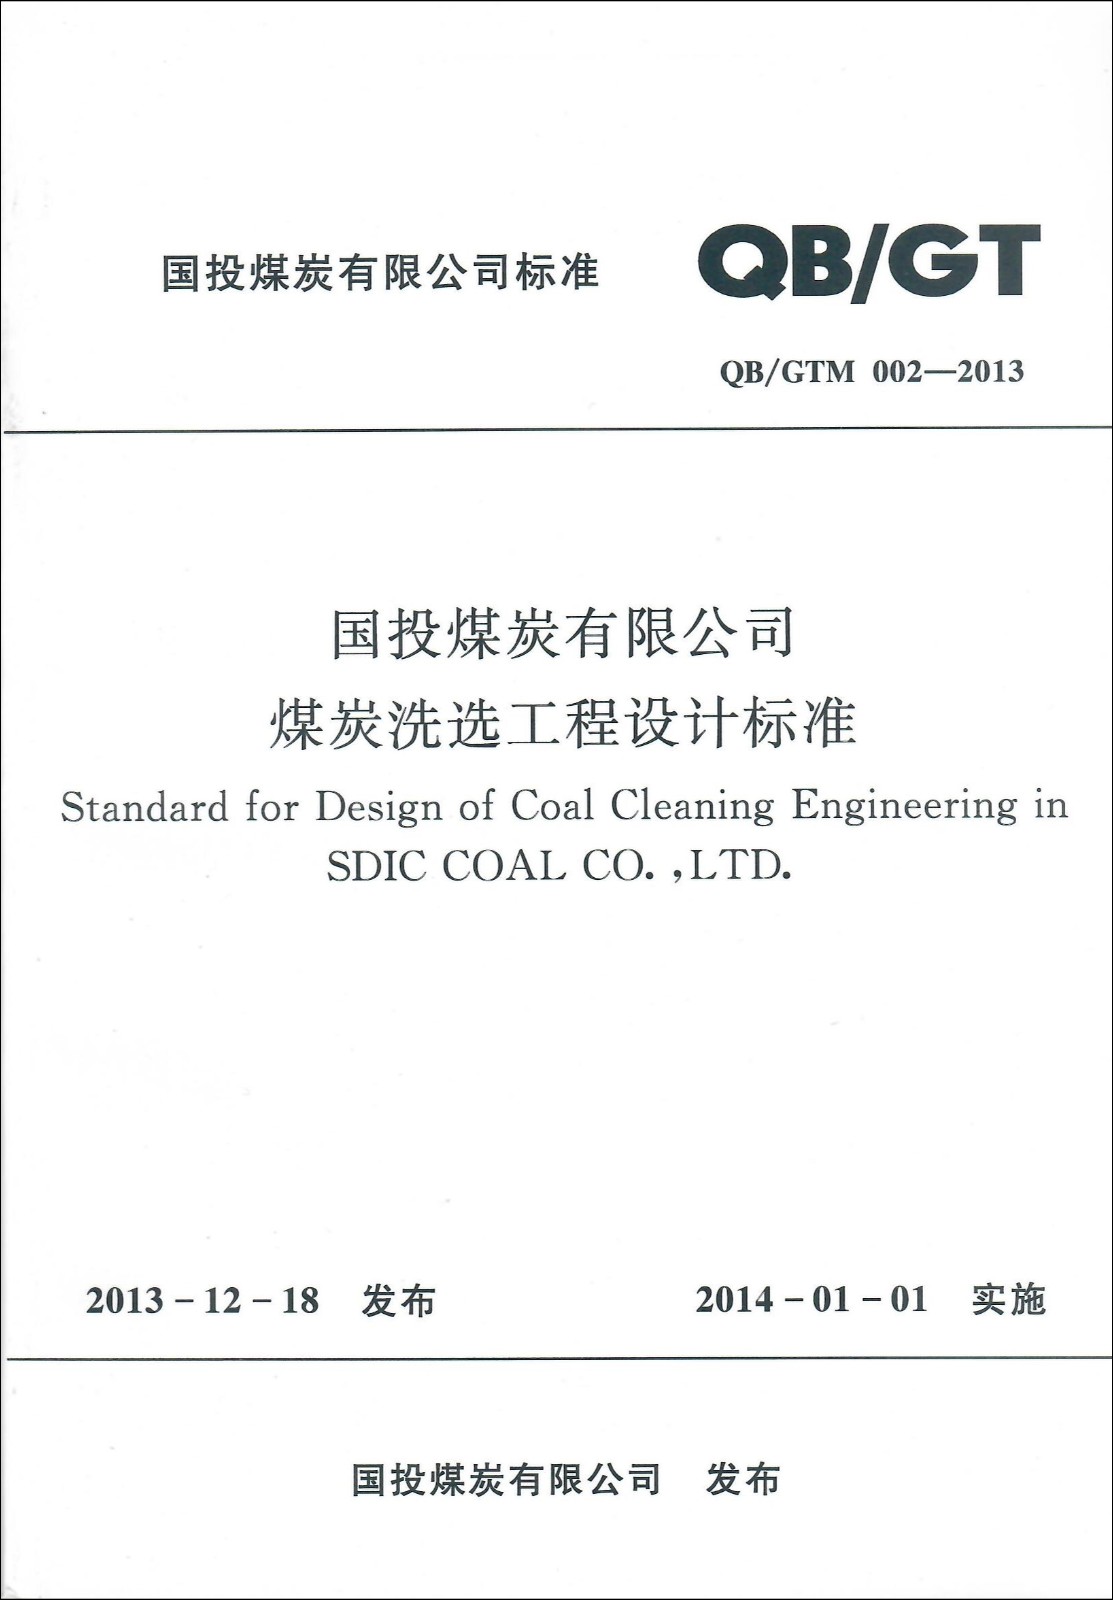 国投煤炭有限公司煤炭洗选工程设计标准.jpg